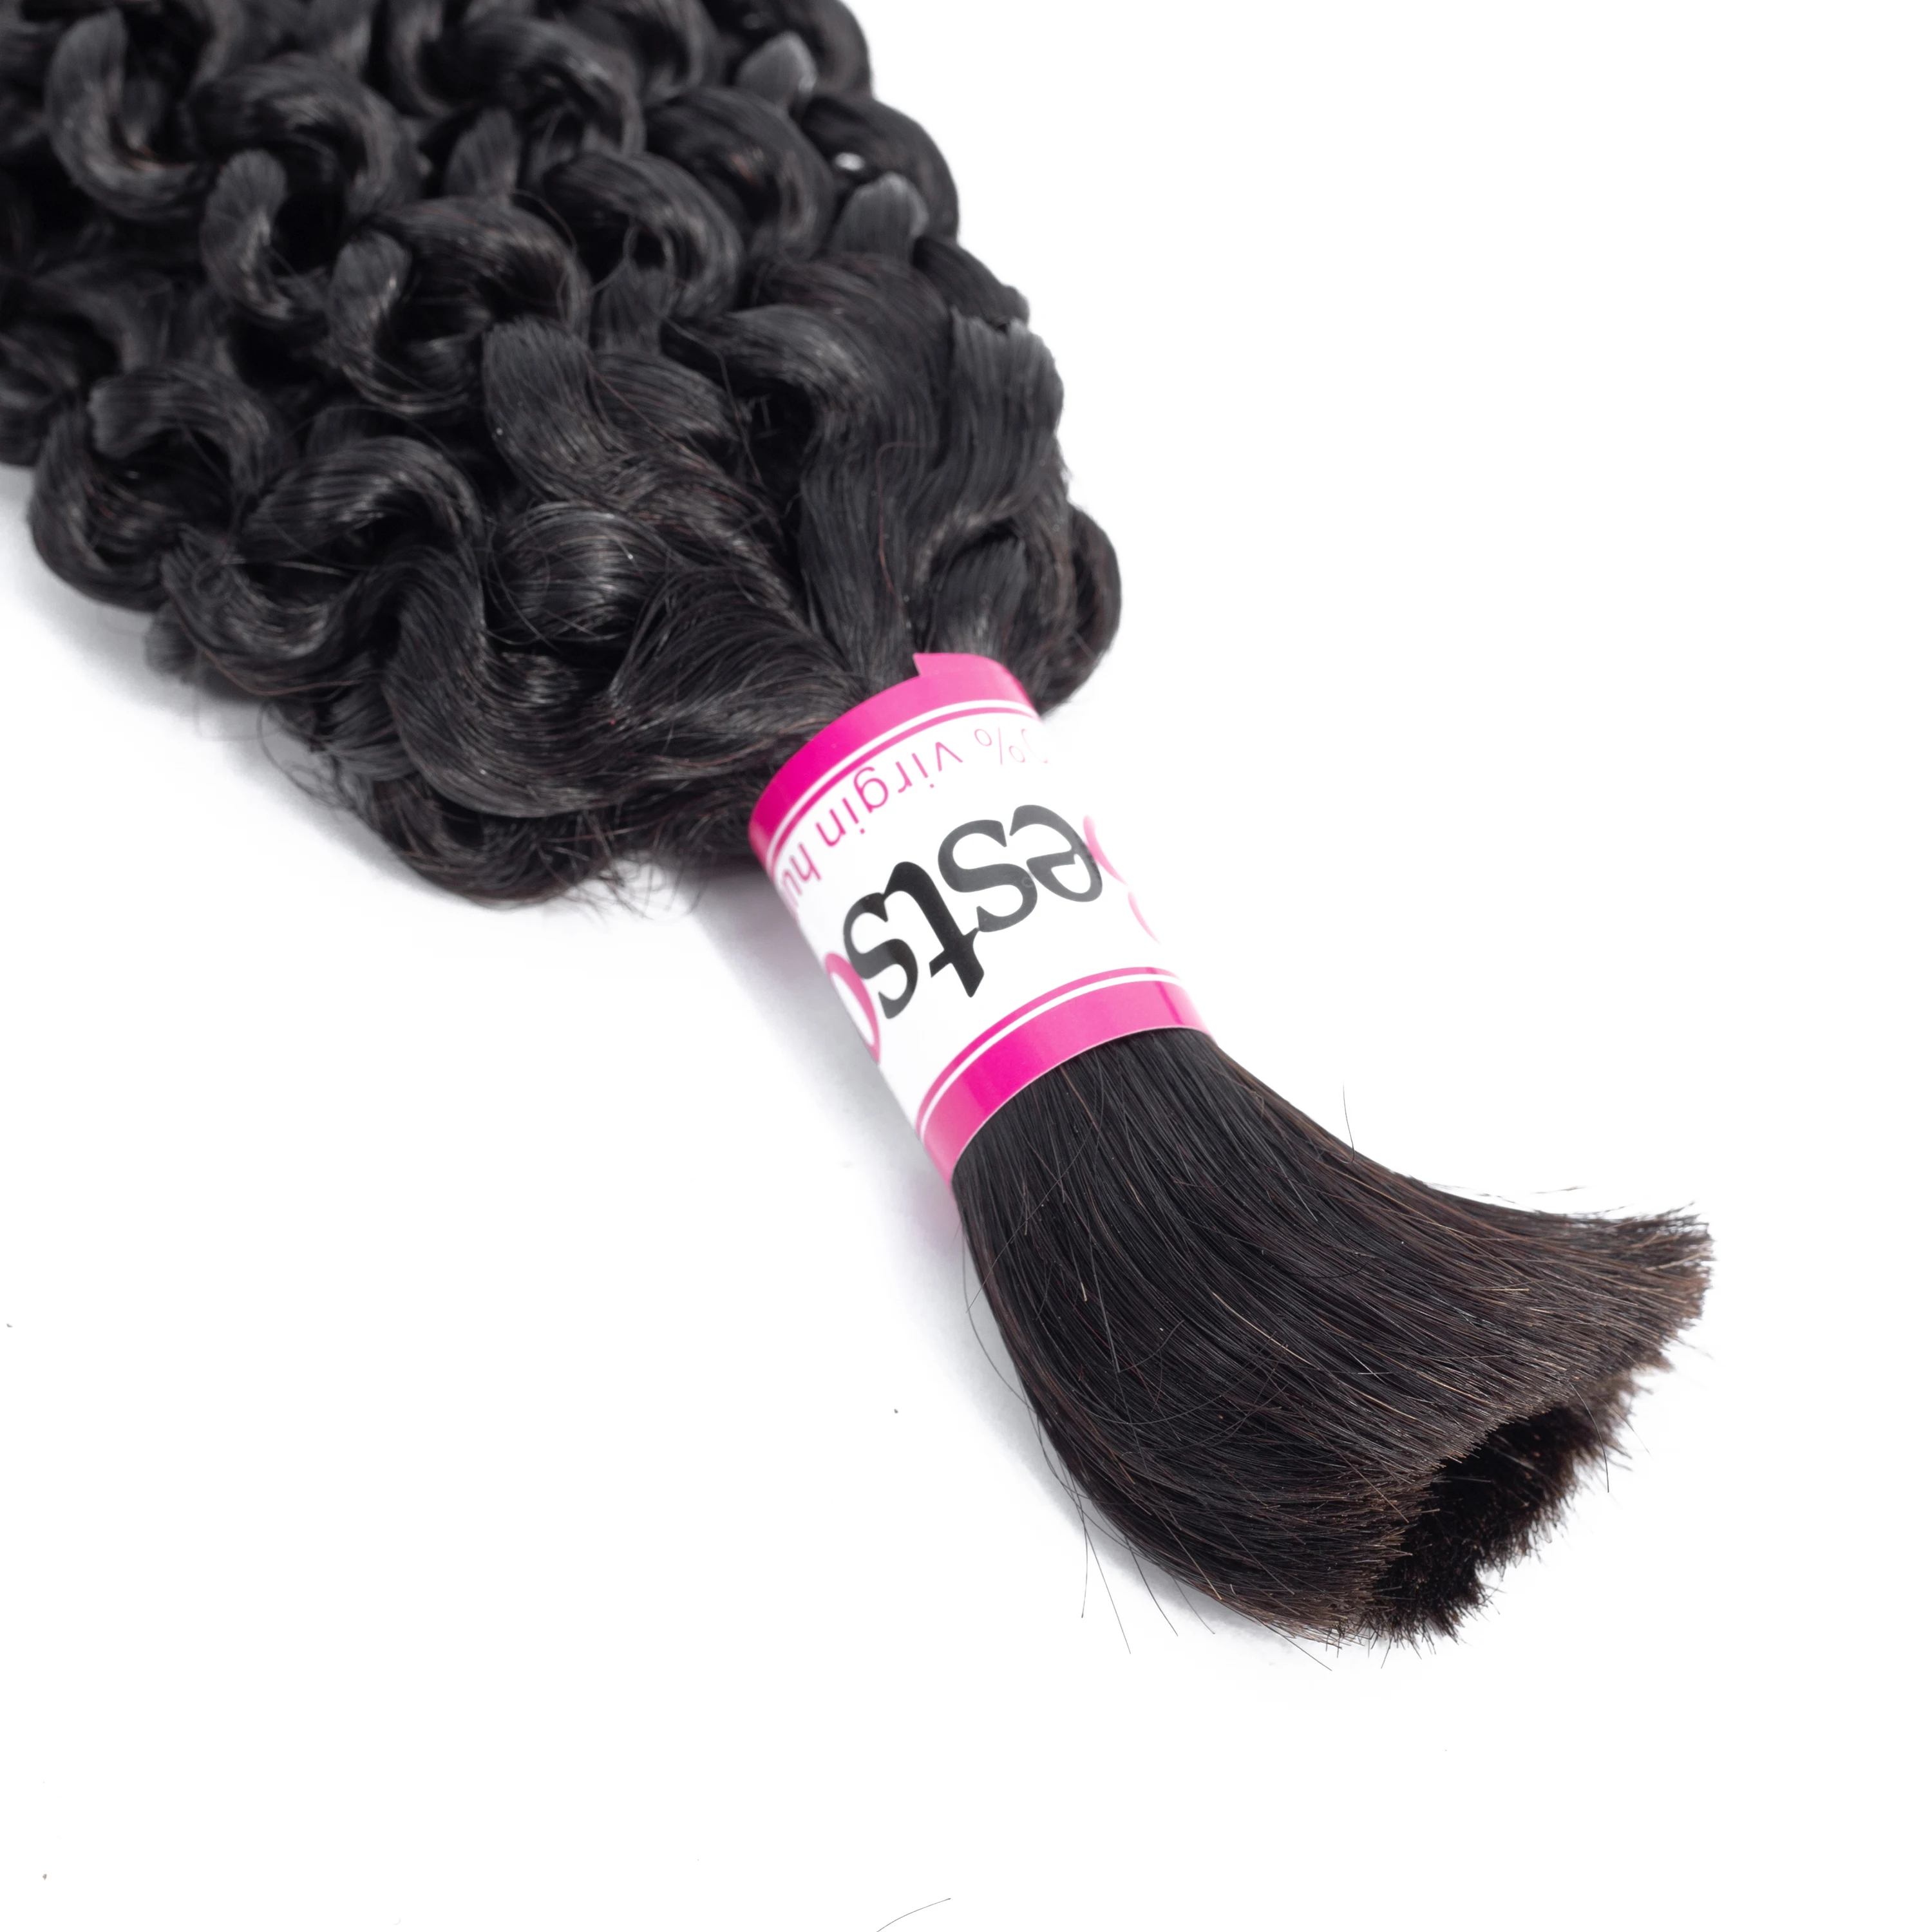 Необработанные натуральные человеческие волосы remy Bestsojoy, бразильские волосы, волнистые, волнистые, черные, 8-26 дюймов, бесплатная доставка от AliExpress WW